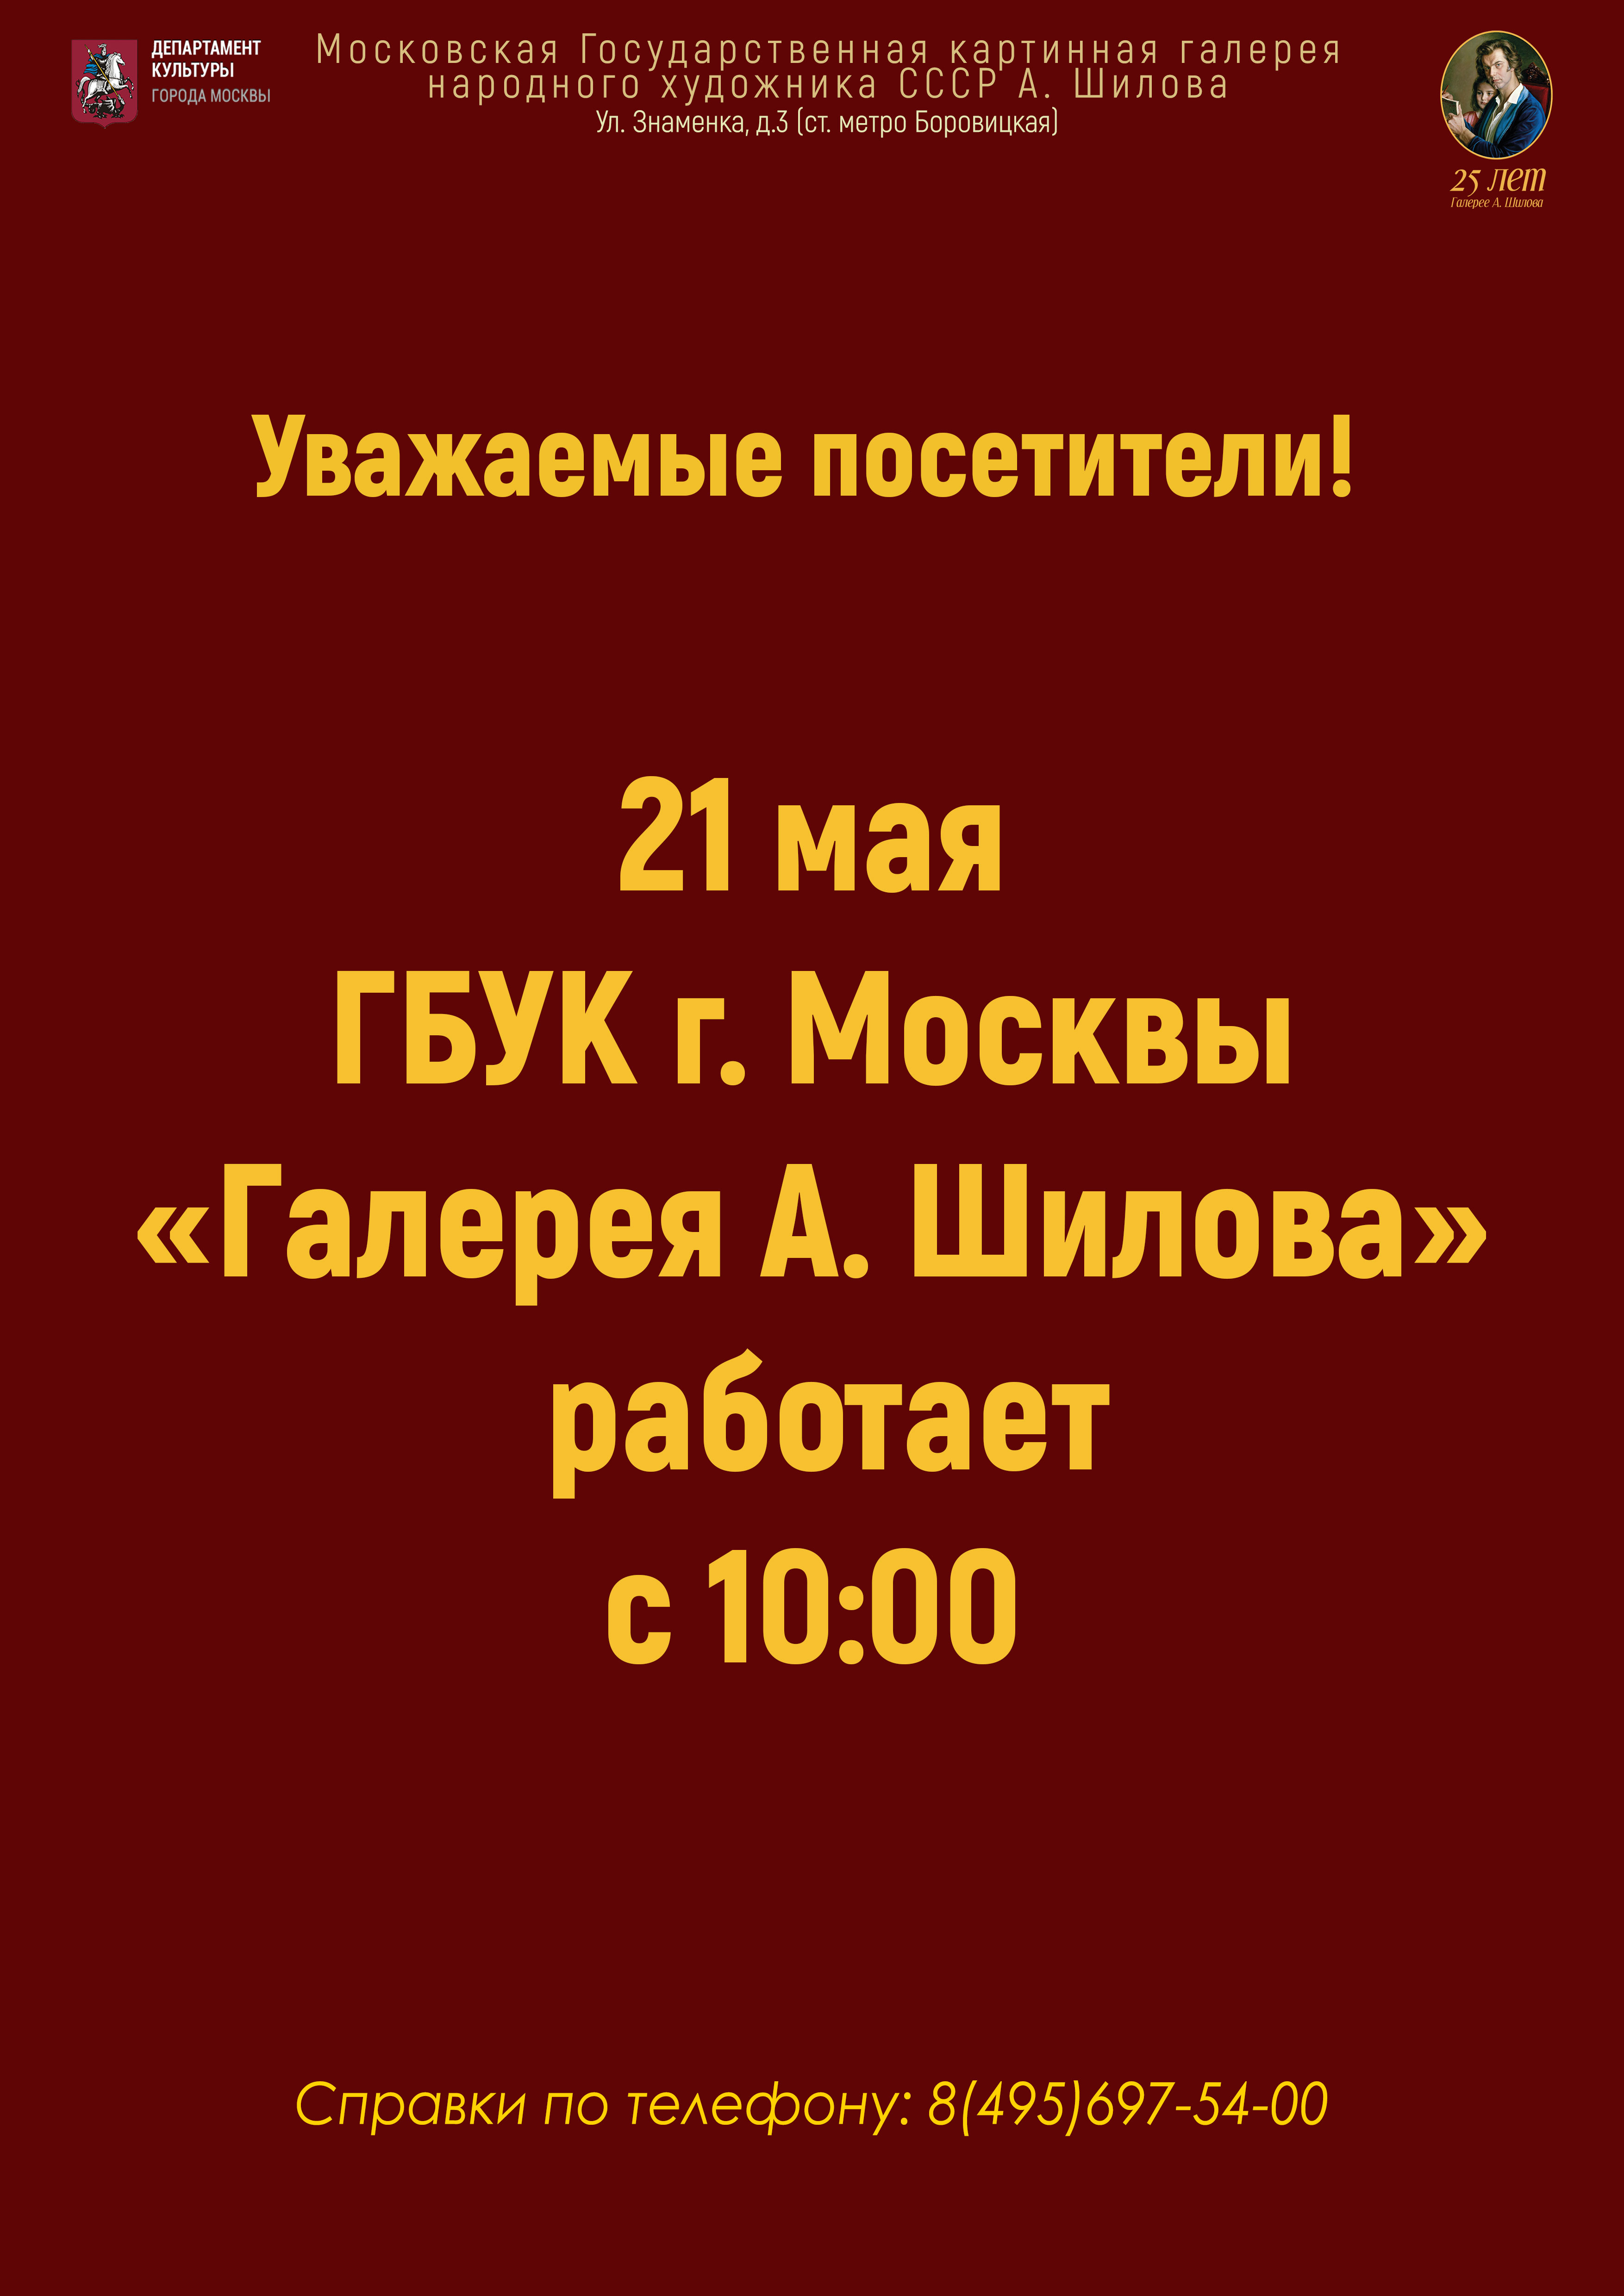 Режим работы ГБУК «Галерея А. Шилова» 21 мая